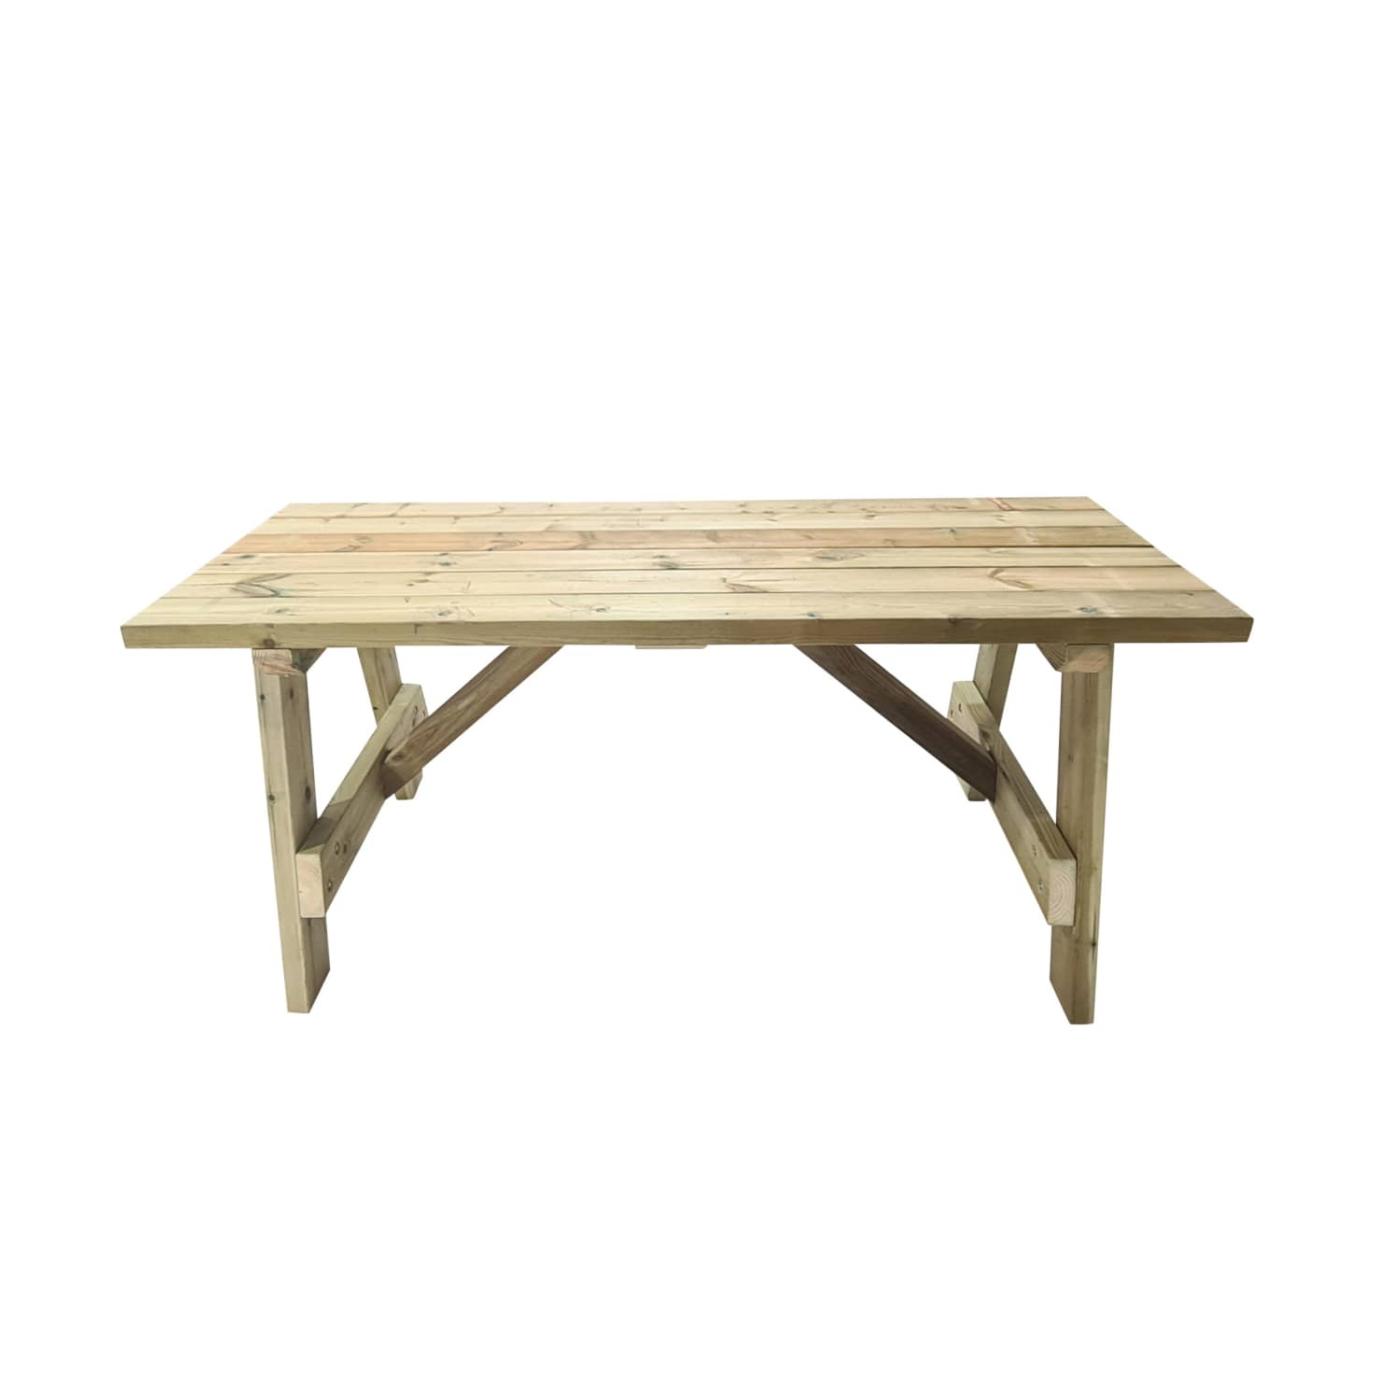 Mesa de madera tratada para el exterior sin bancos MASGAMES ZURICH